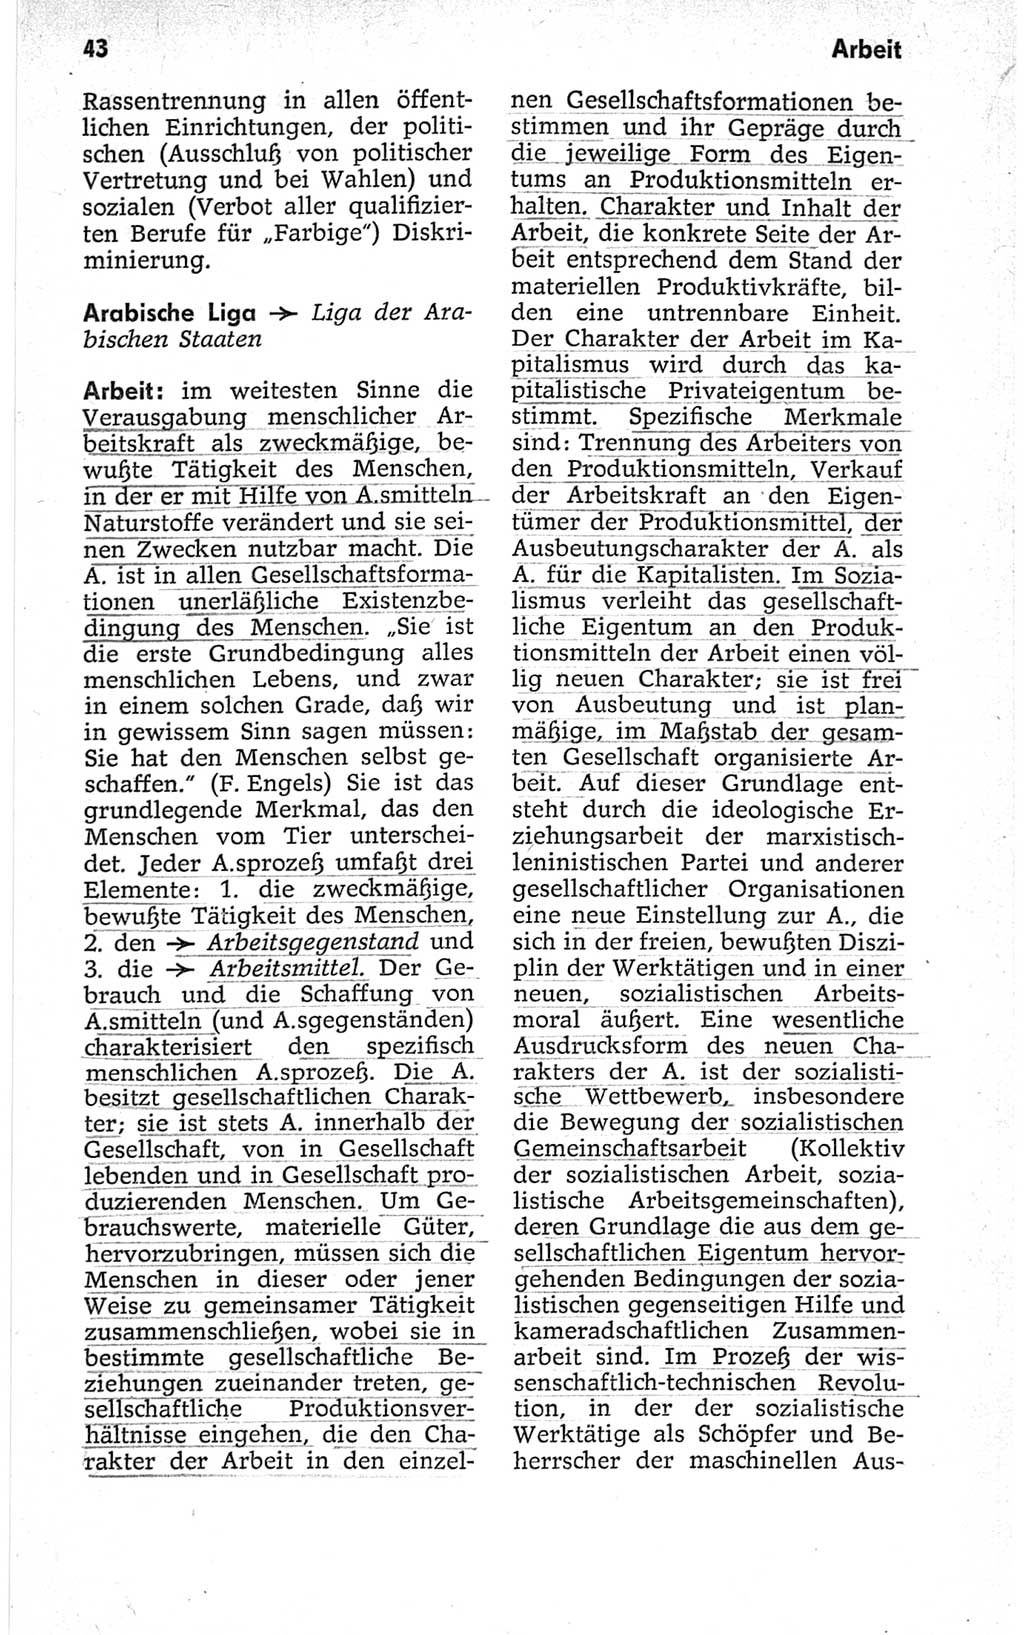 Kleines politisches Wörterbuch [Deutsche Demokratische Republik (DDR)] 1967, Seite 43 (Kl. pol. Wb. DDR 1967, S. 43)